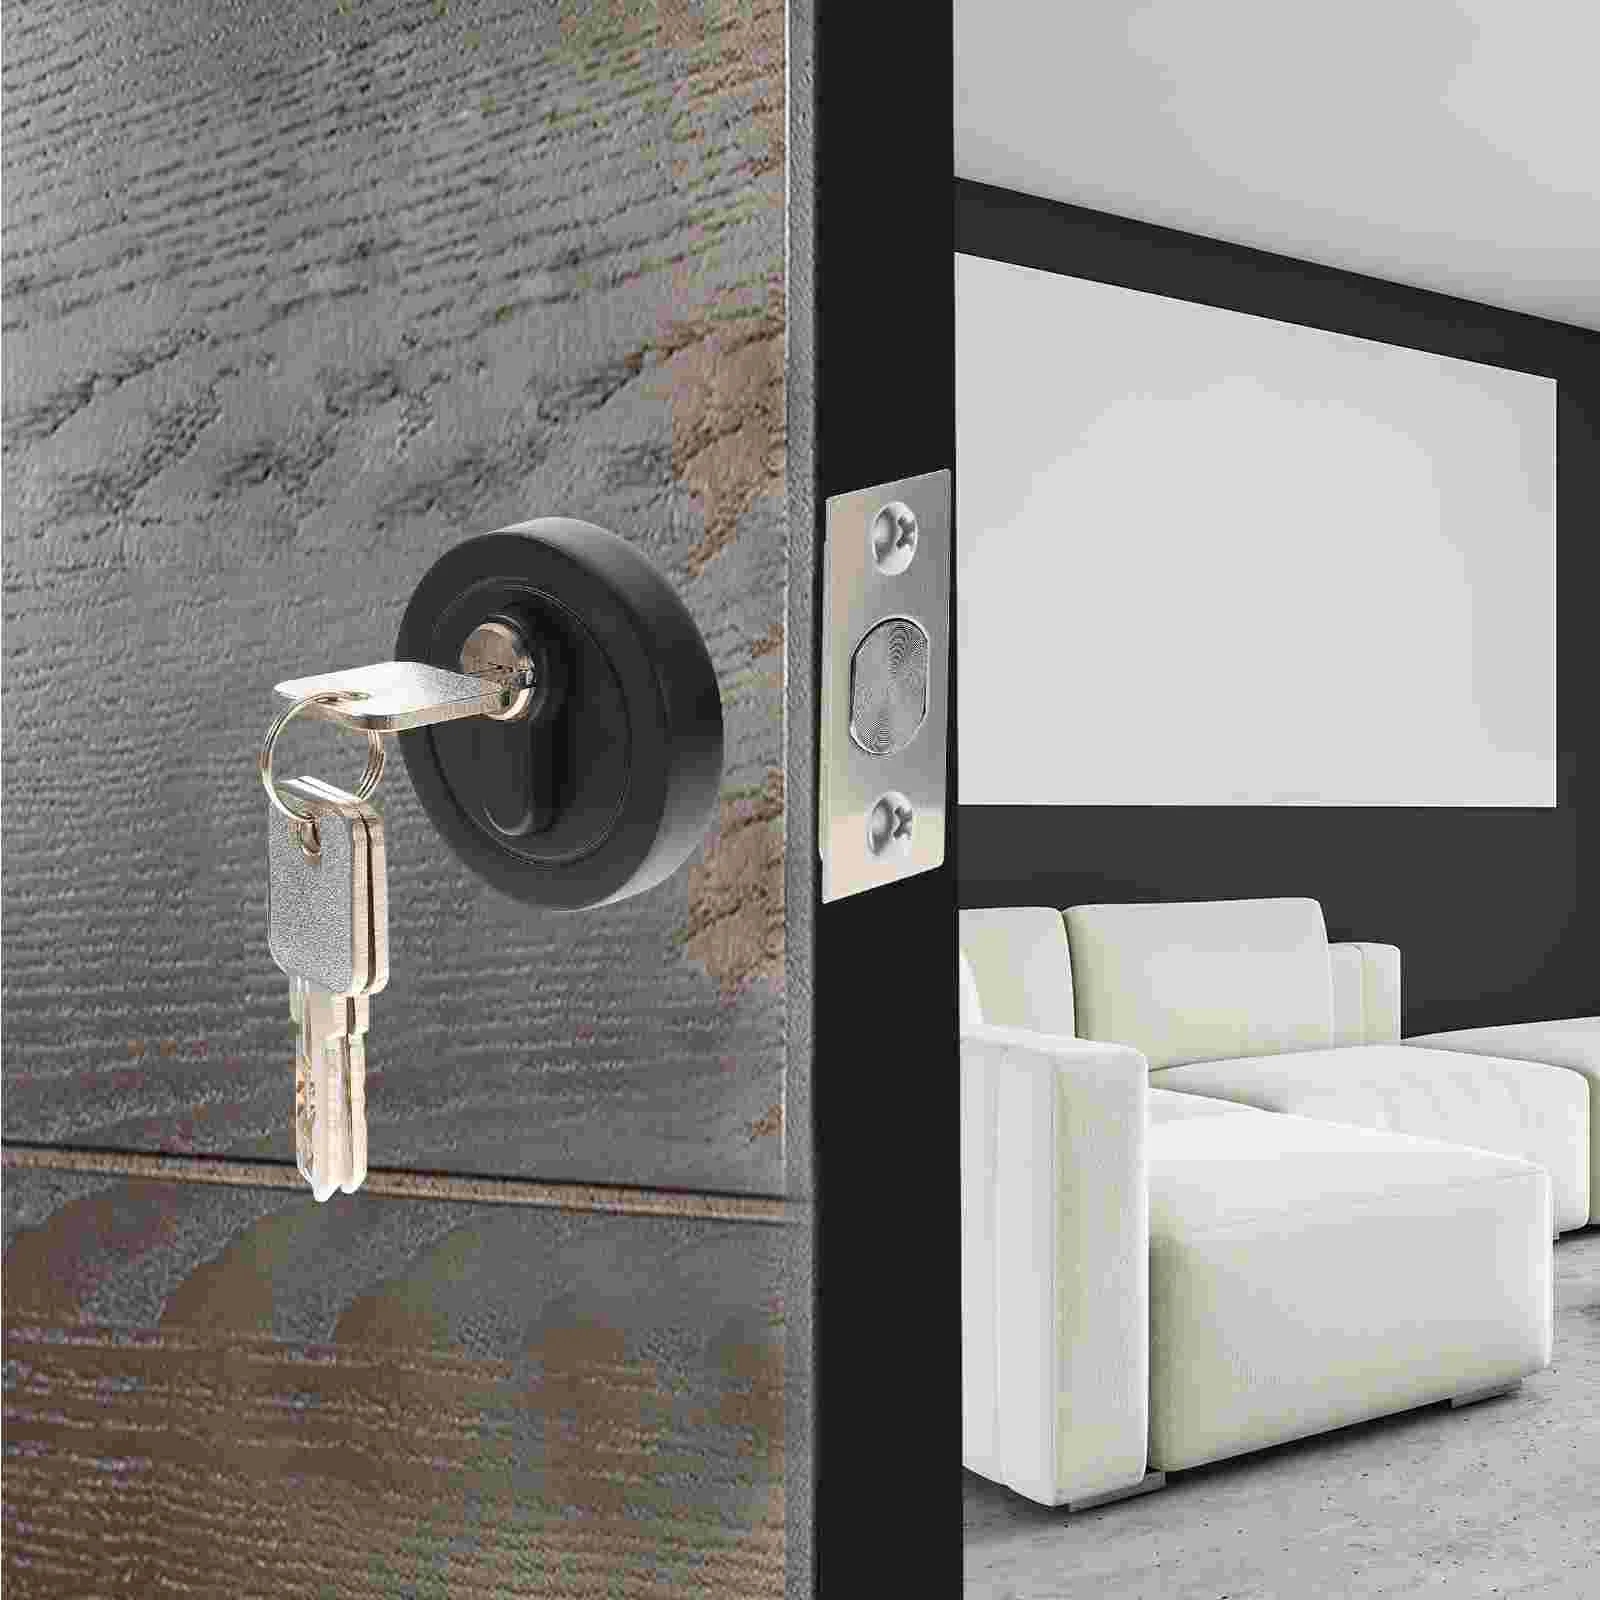 

Single Cylinder Door Deadbolt Lock Zinc Alloy Entry Door Keyed Lock Exterior Bolt Interior Dead Bolt Lock Security For Bedroom